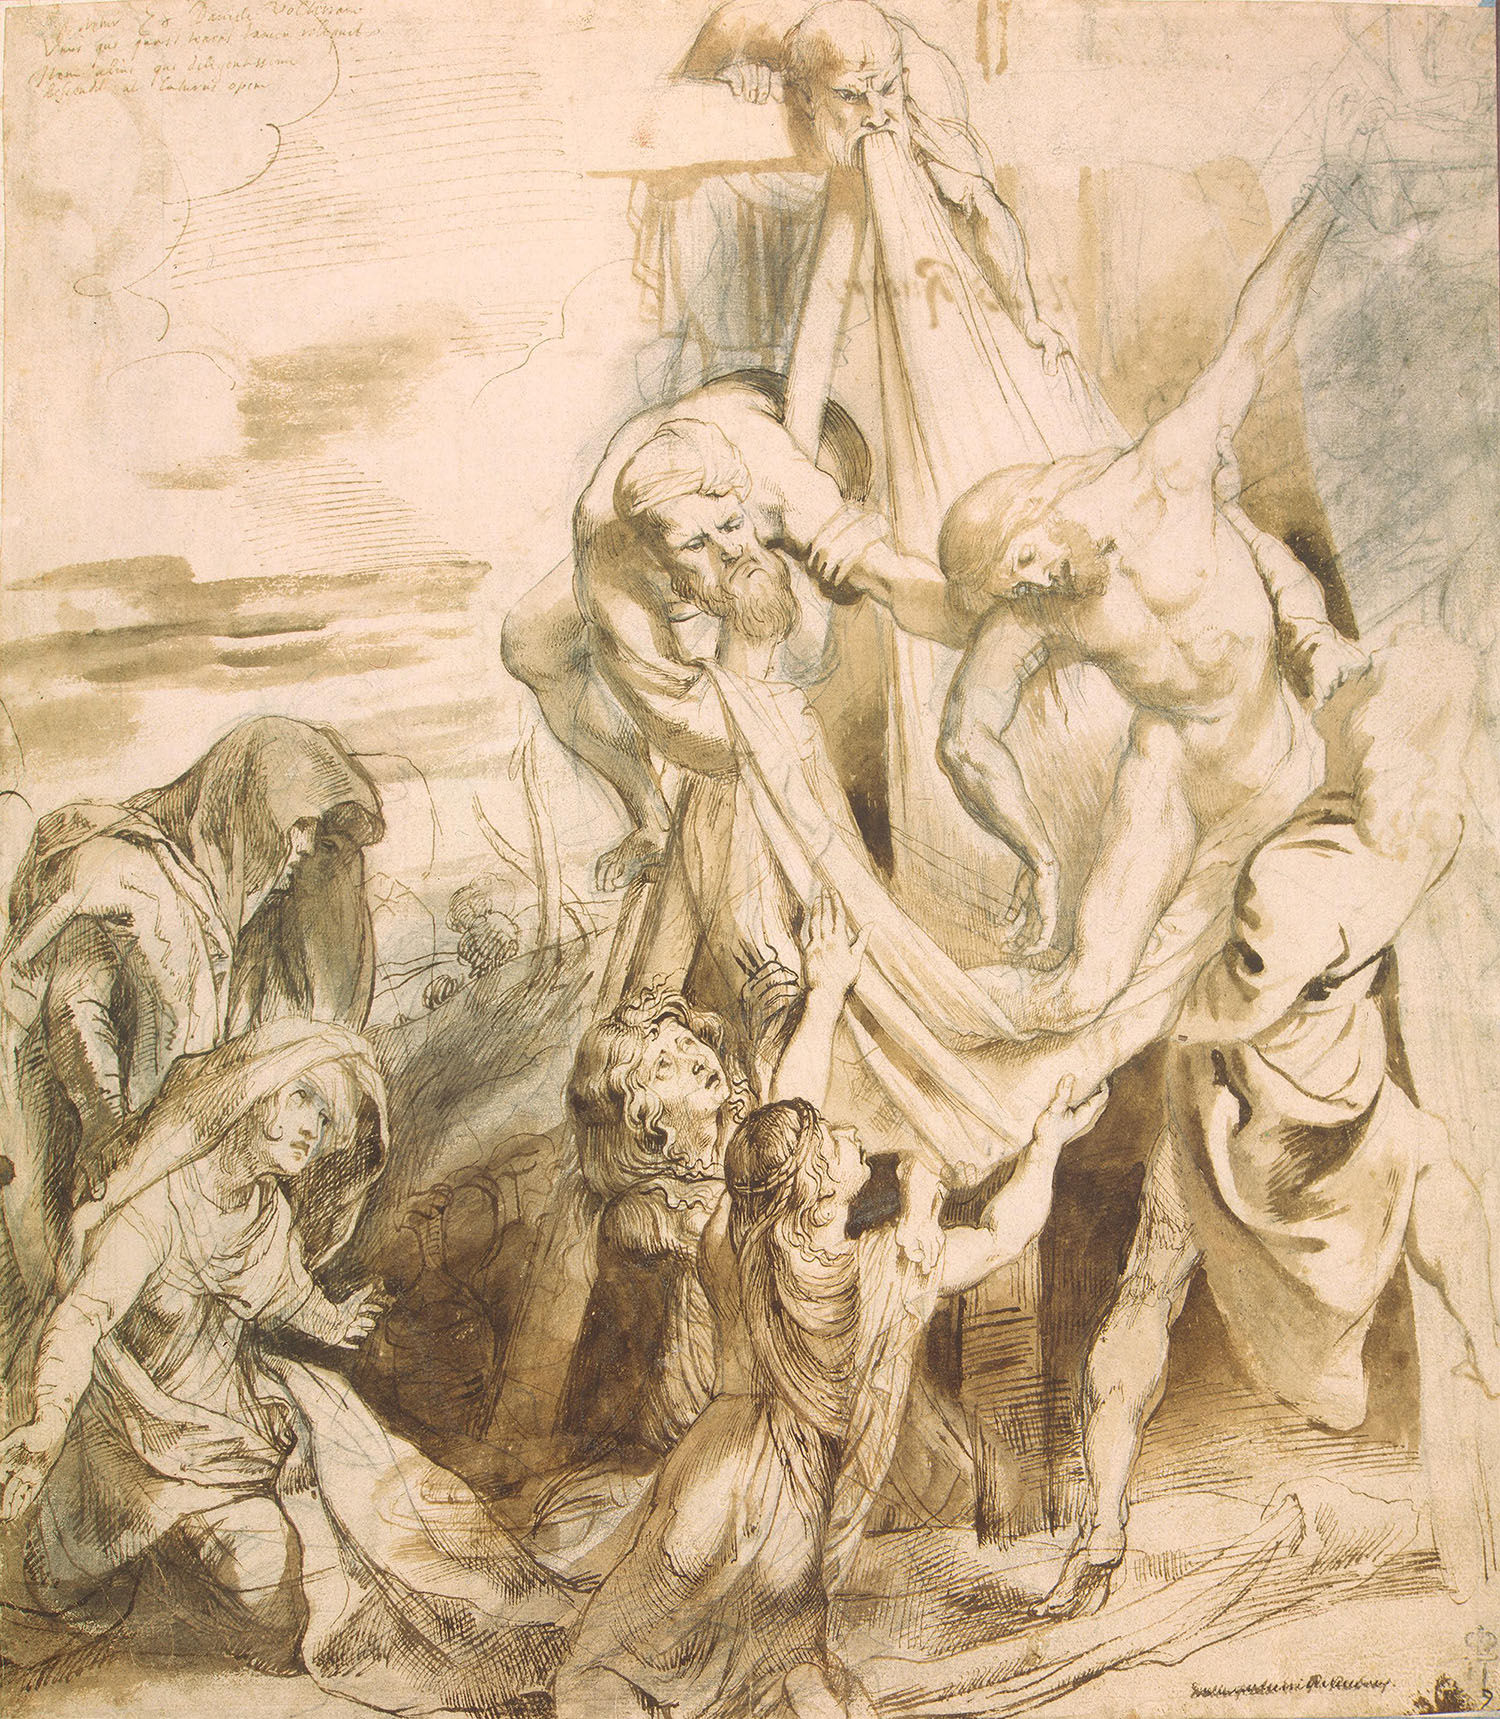 Питер Пауль Рубенс. "Снятие с креста". Около 1611. Эрмитаж, Санкт-Петербург.